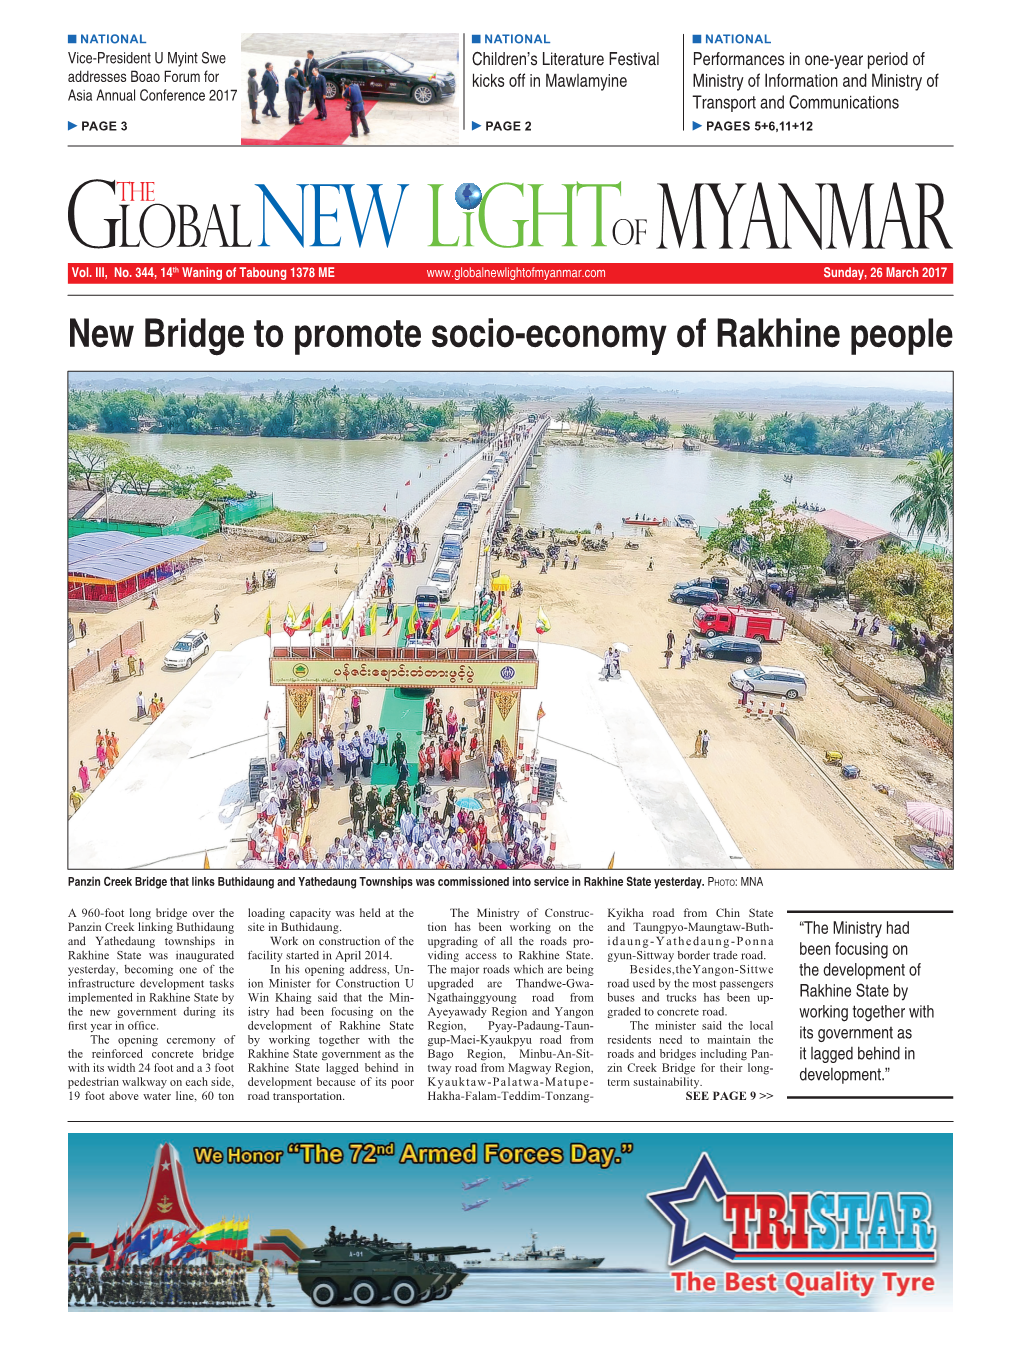 New Bridge to Promote Socio-Economy of Rakhine People